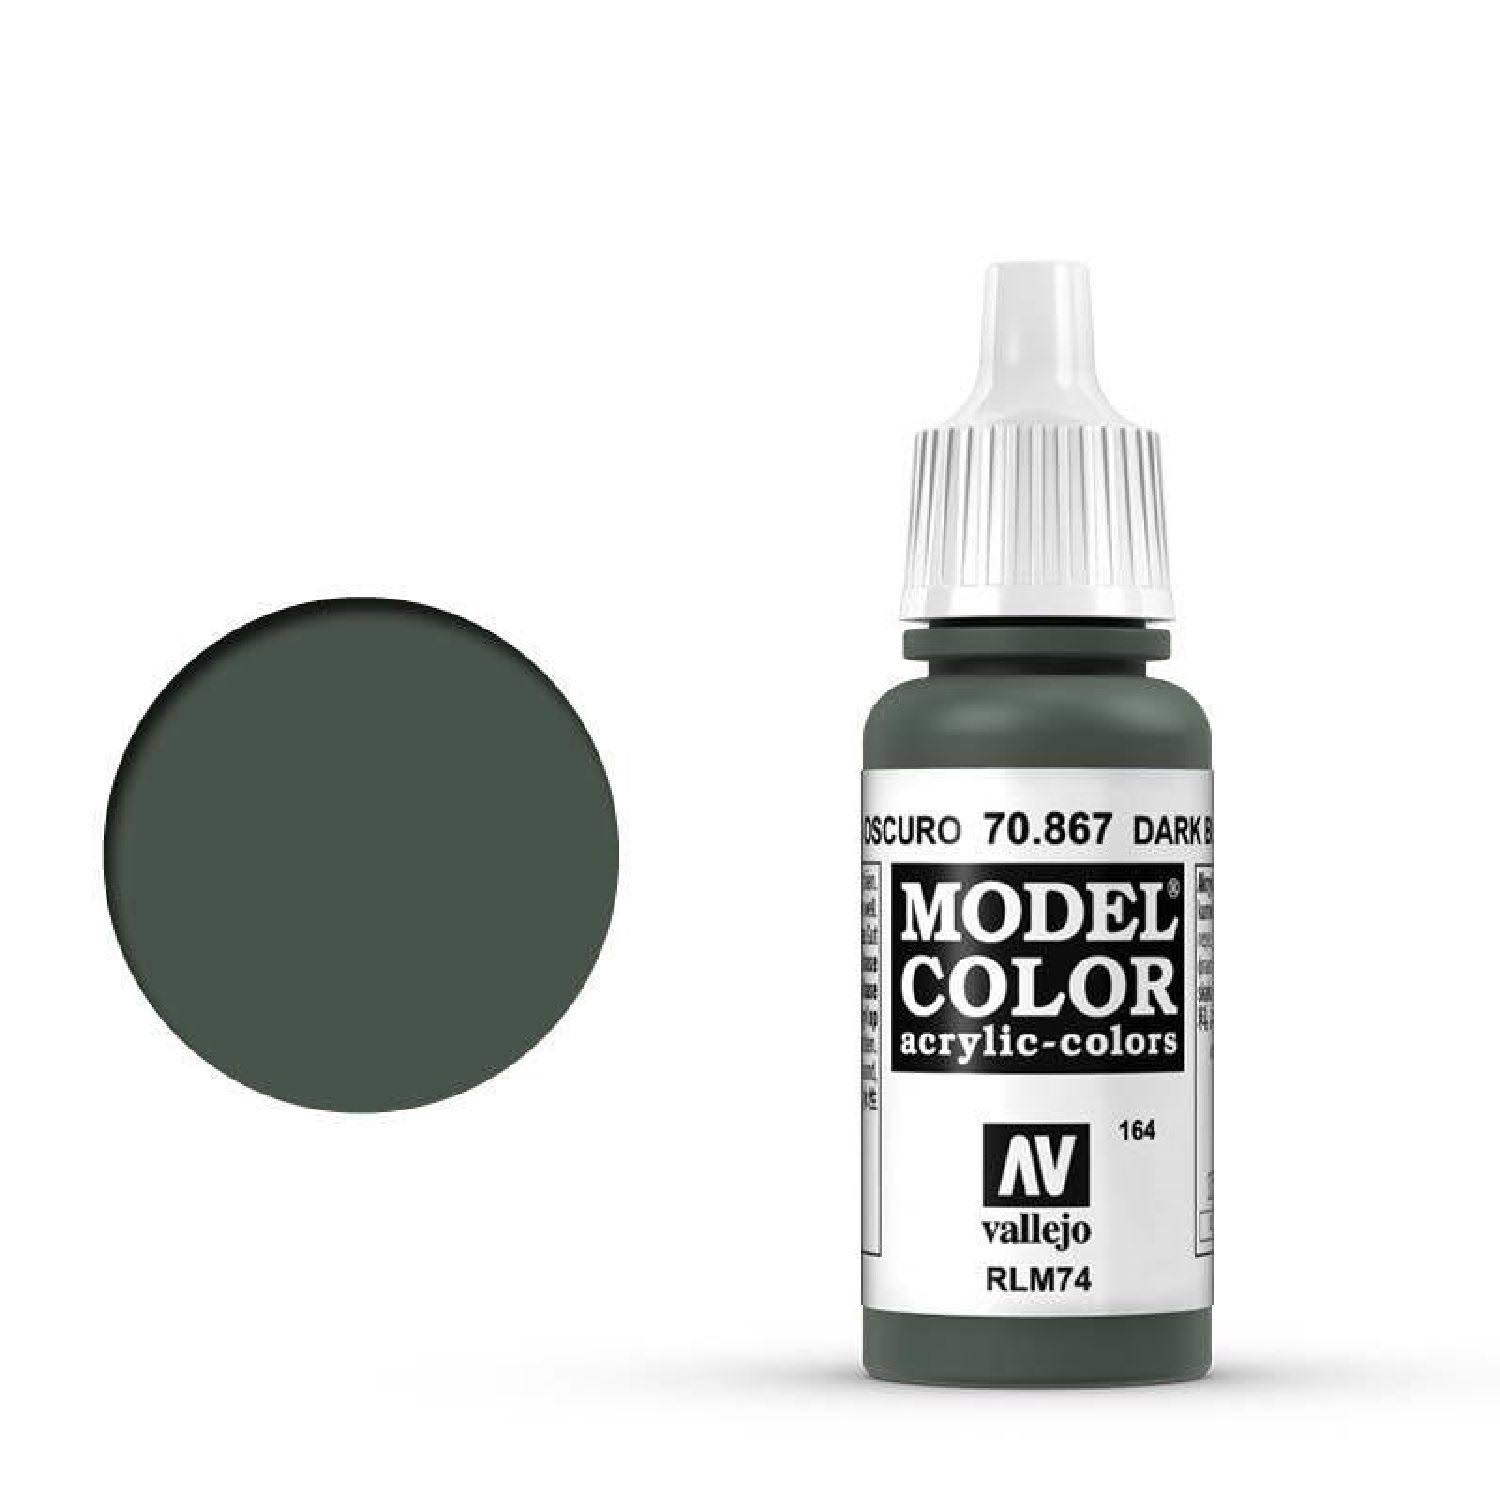 Vallejo Model Color Acrylic Paint - Dark Blue Grey, 17ml